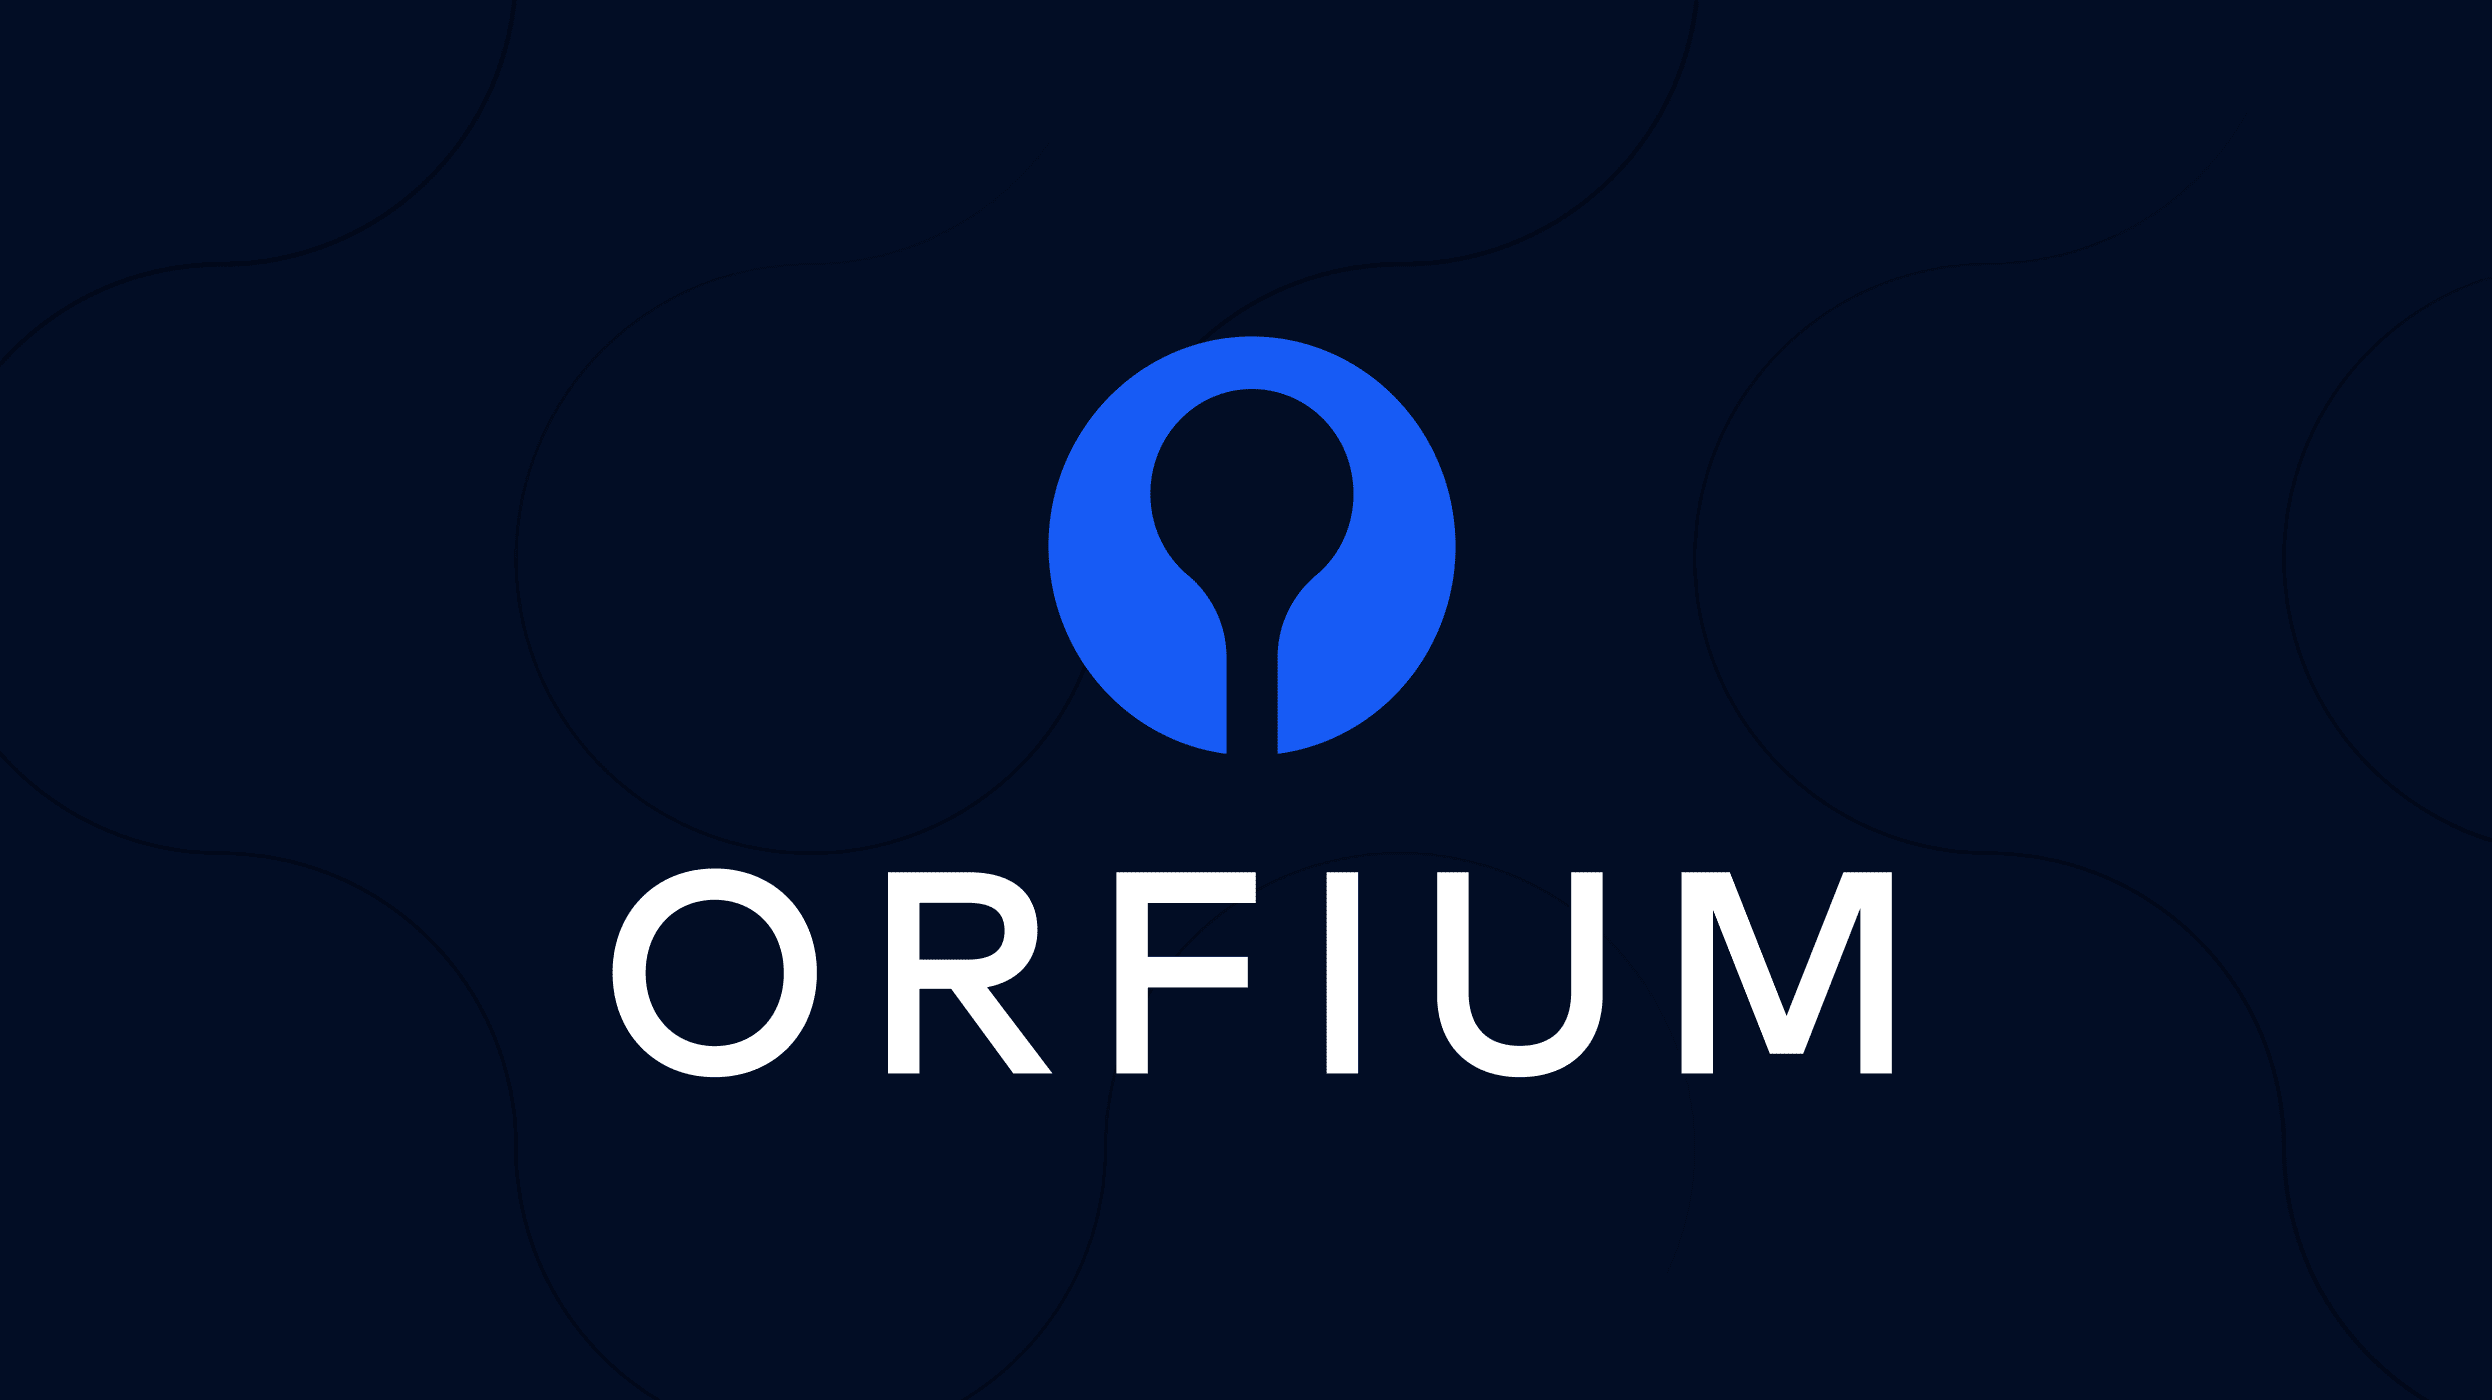 www.orfium.com